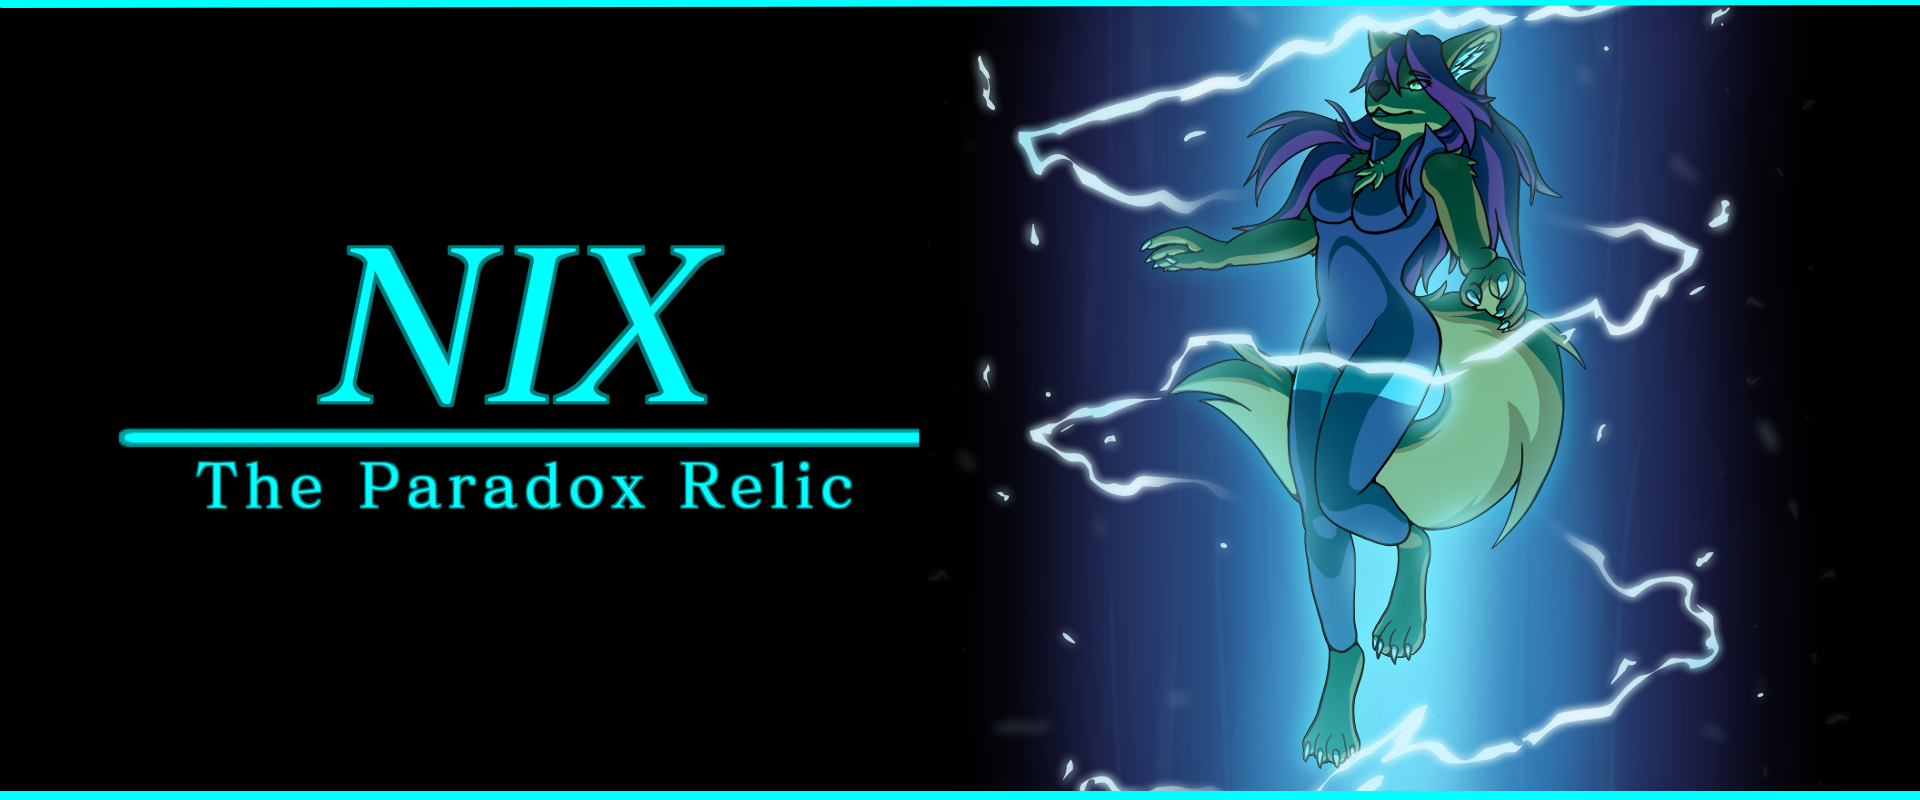 Nix: The Paradox Relic